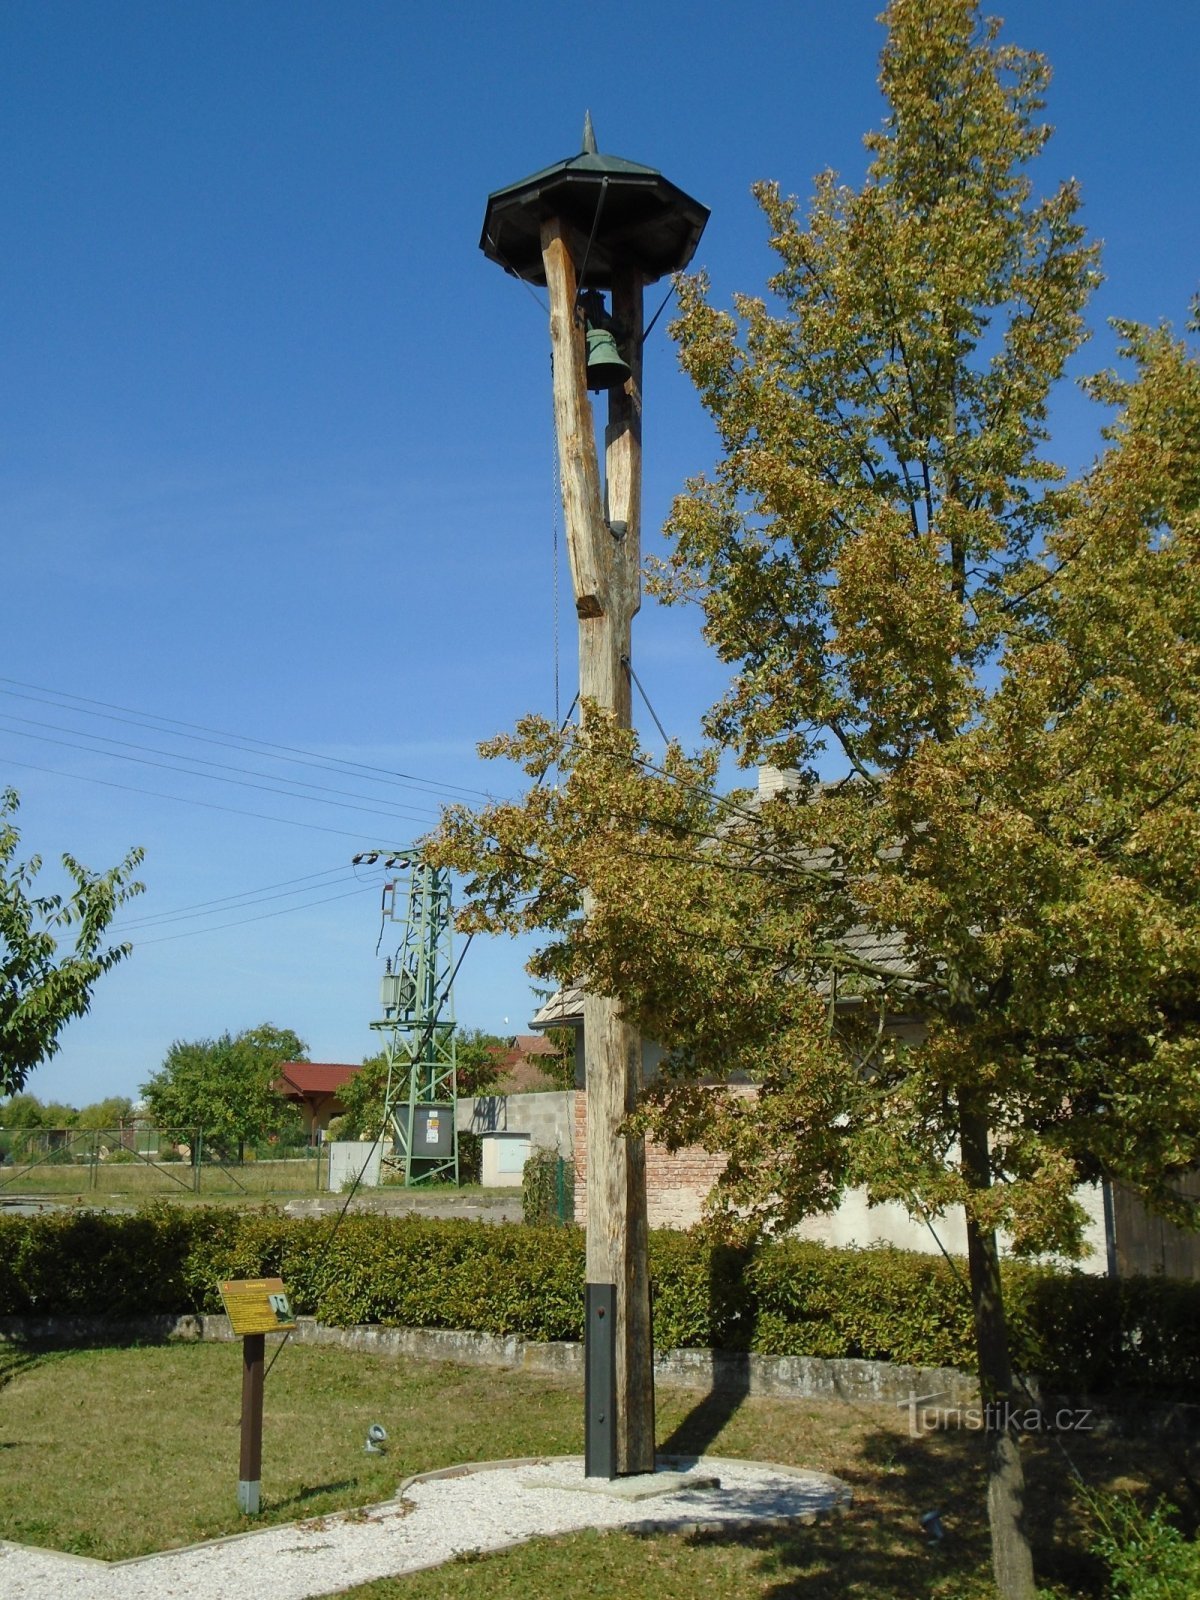 Tháp chuông (Jílovice)